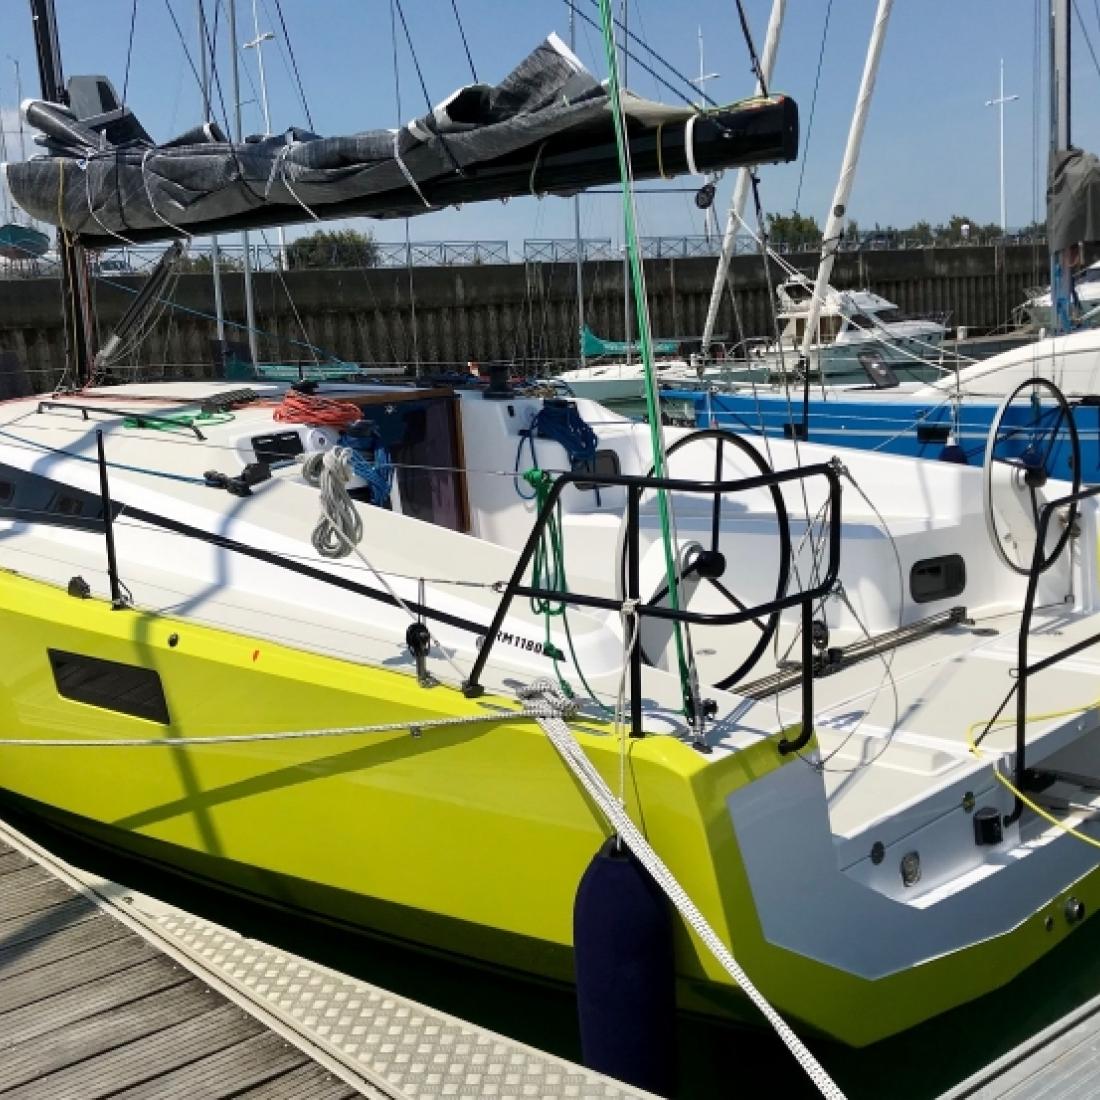 sailboat barca vela bareboat charter france francia costa azzurra porquerolles tolone provenza 